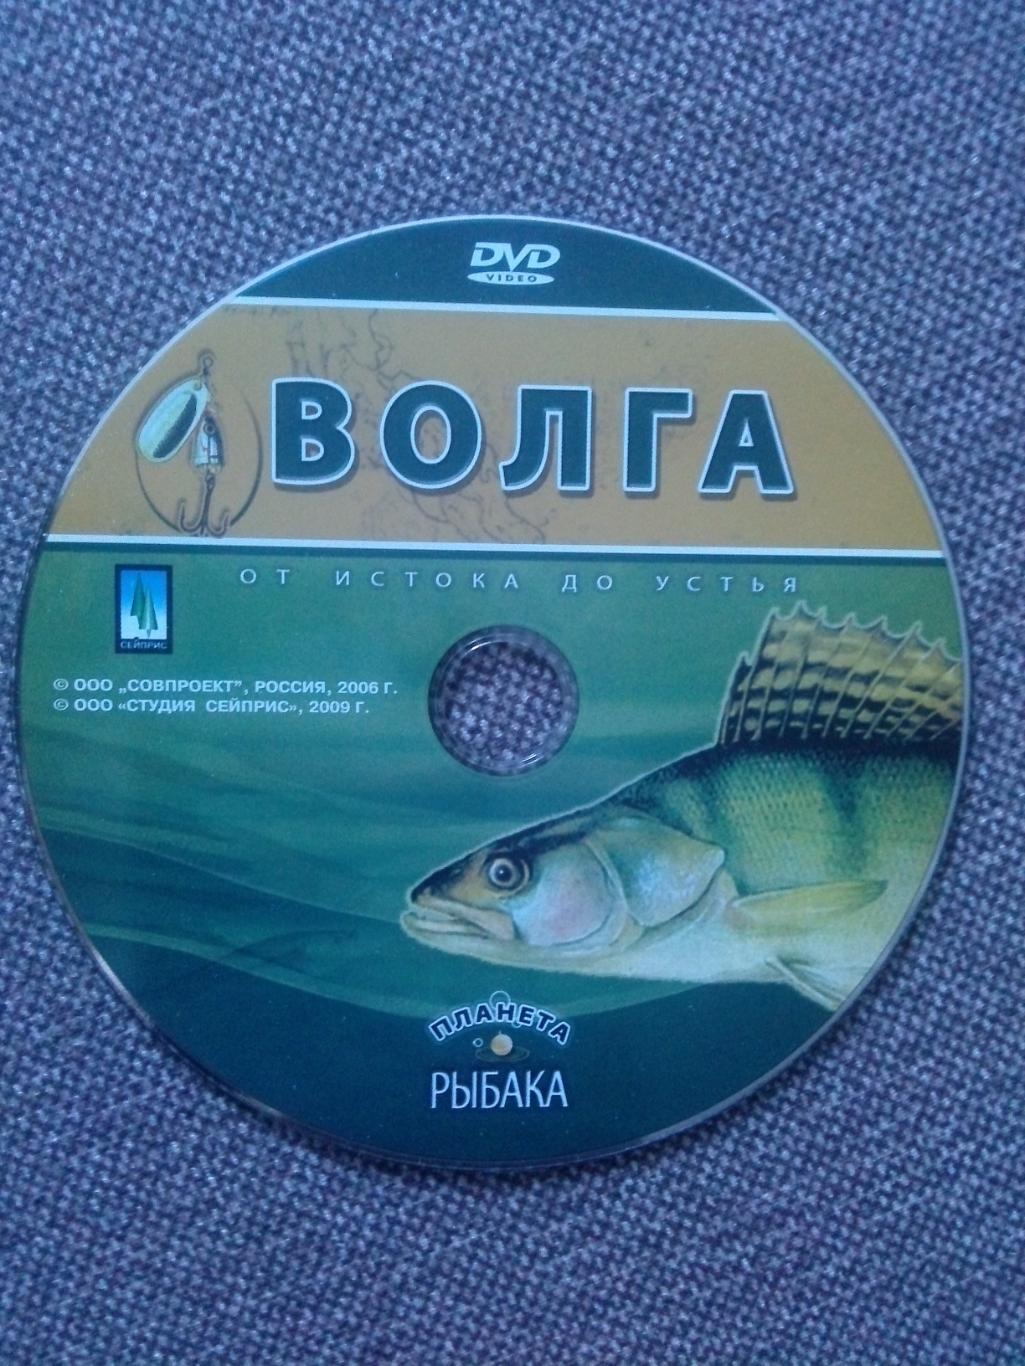 DVD диск : фильм Волга - от истока до устья 10 программ на диске (Рыбалка) 3